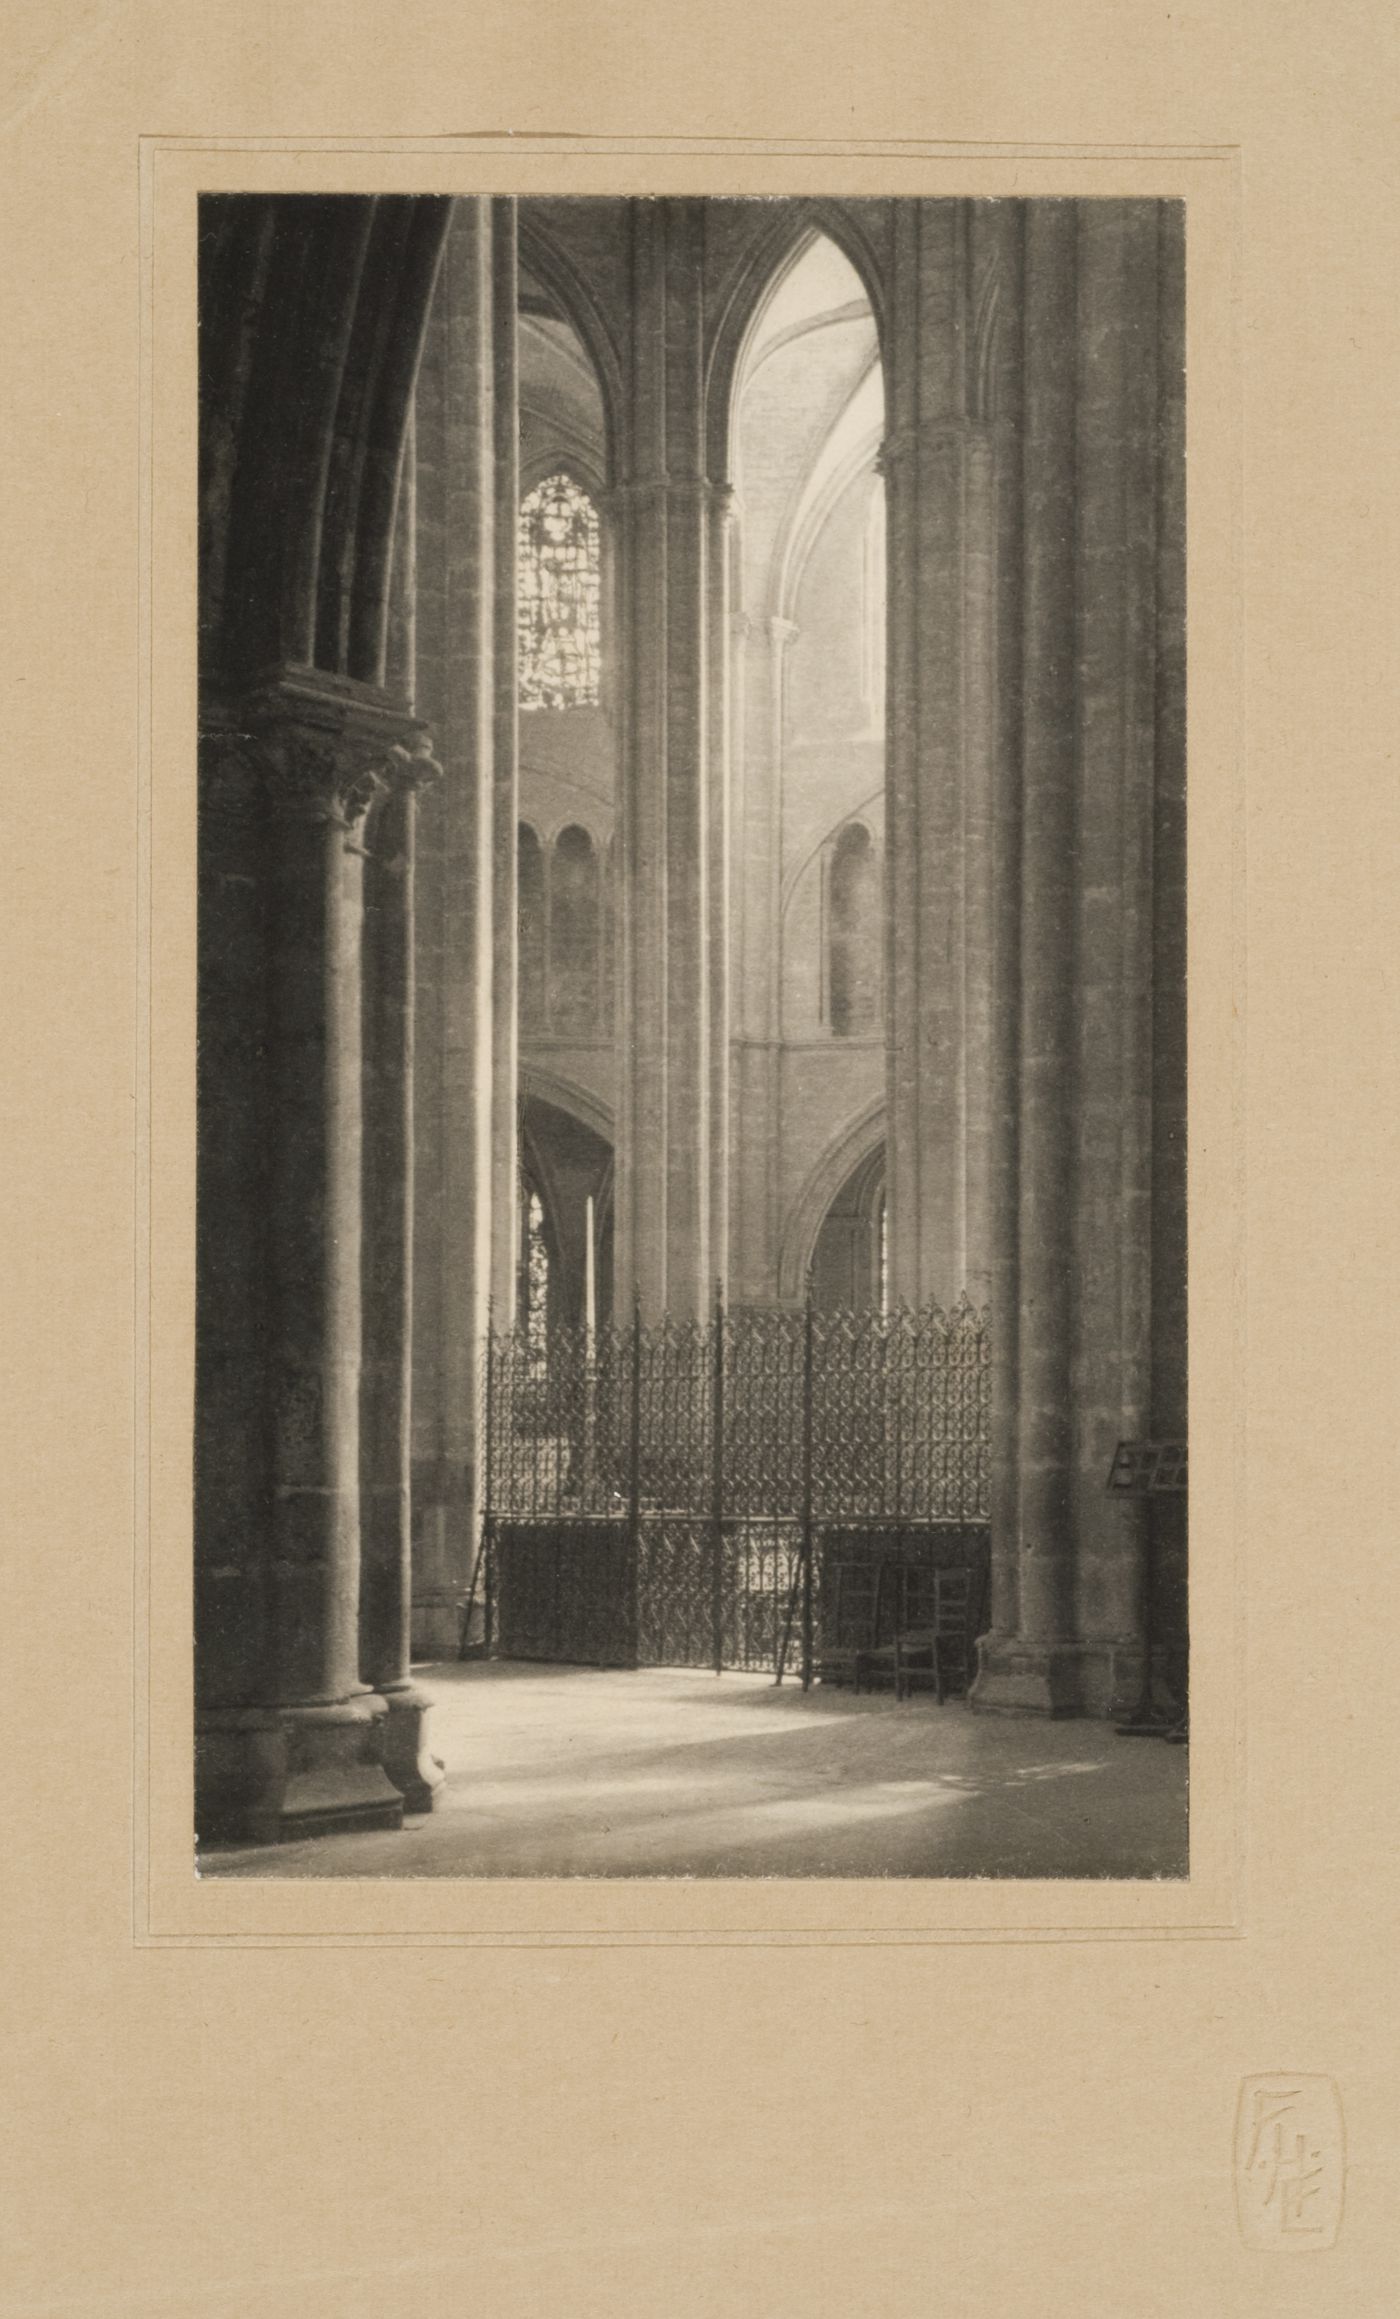 Interior view of Cathédrale Saint-Etienne de Bourges, Bourges, France